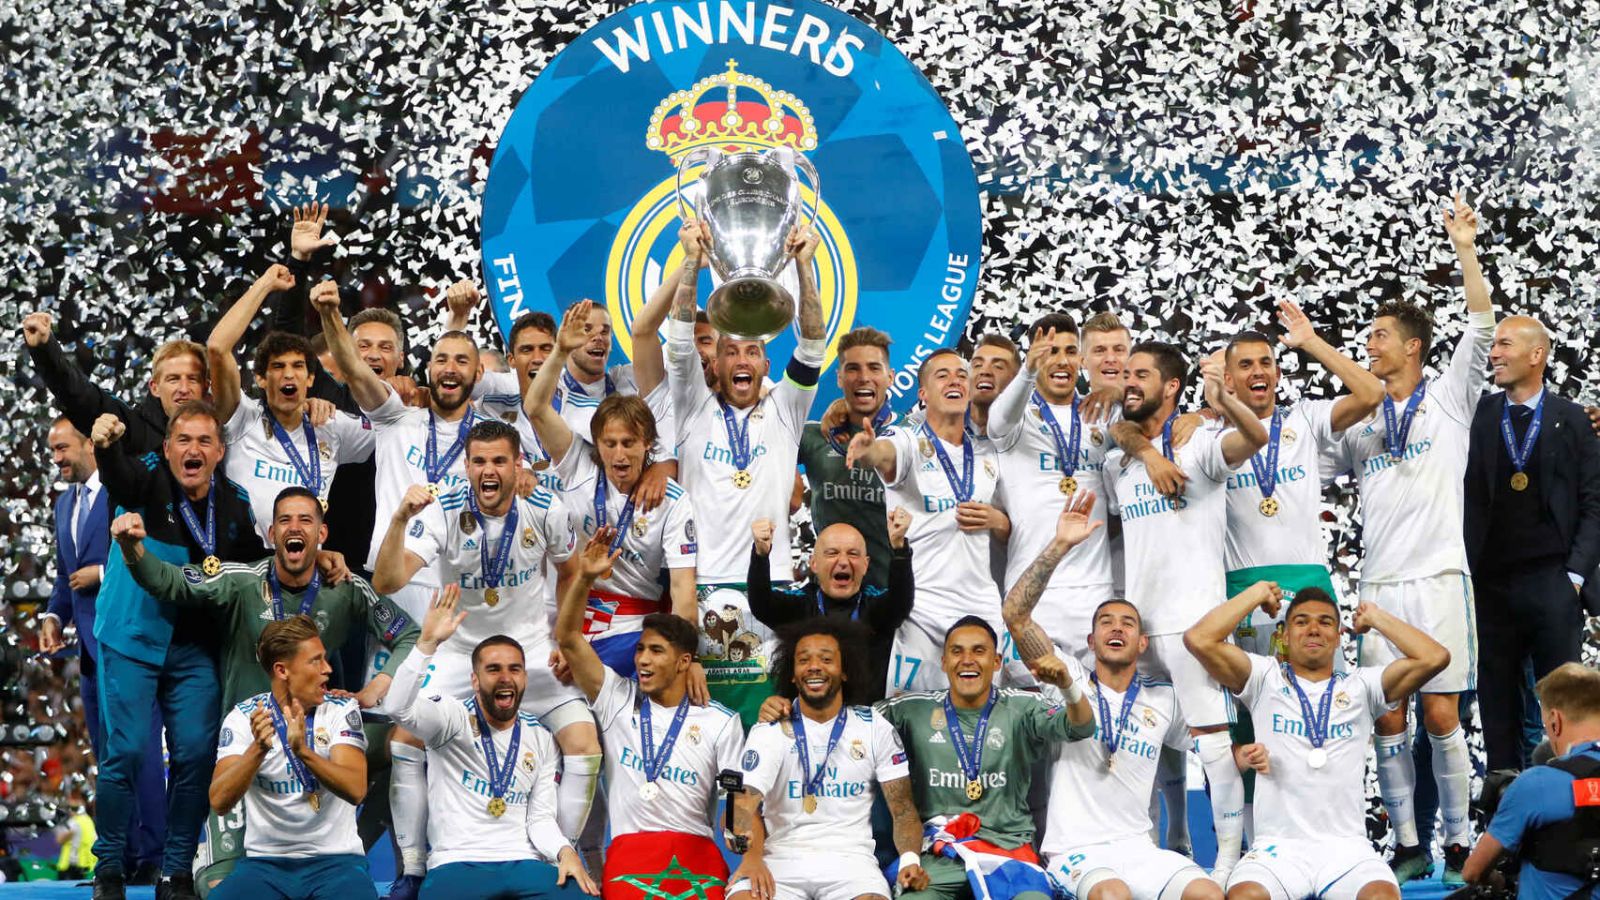 El Real Madrid seguir ganando, pero no seguir pagando millonarios salarios a sus jugadores 